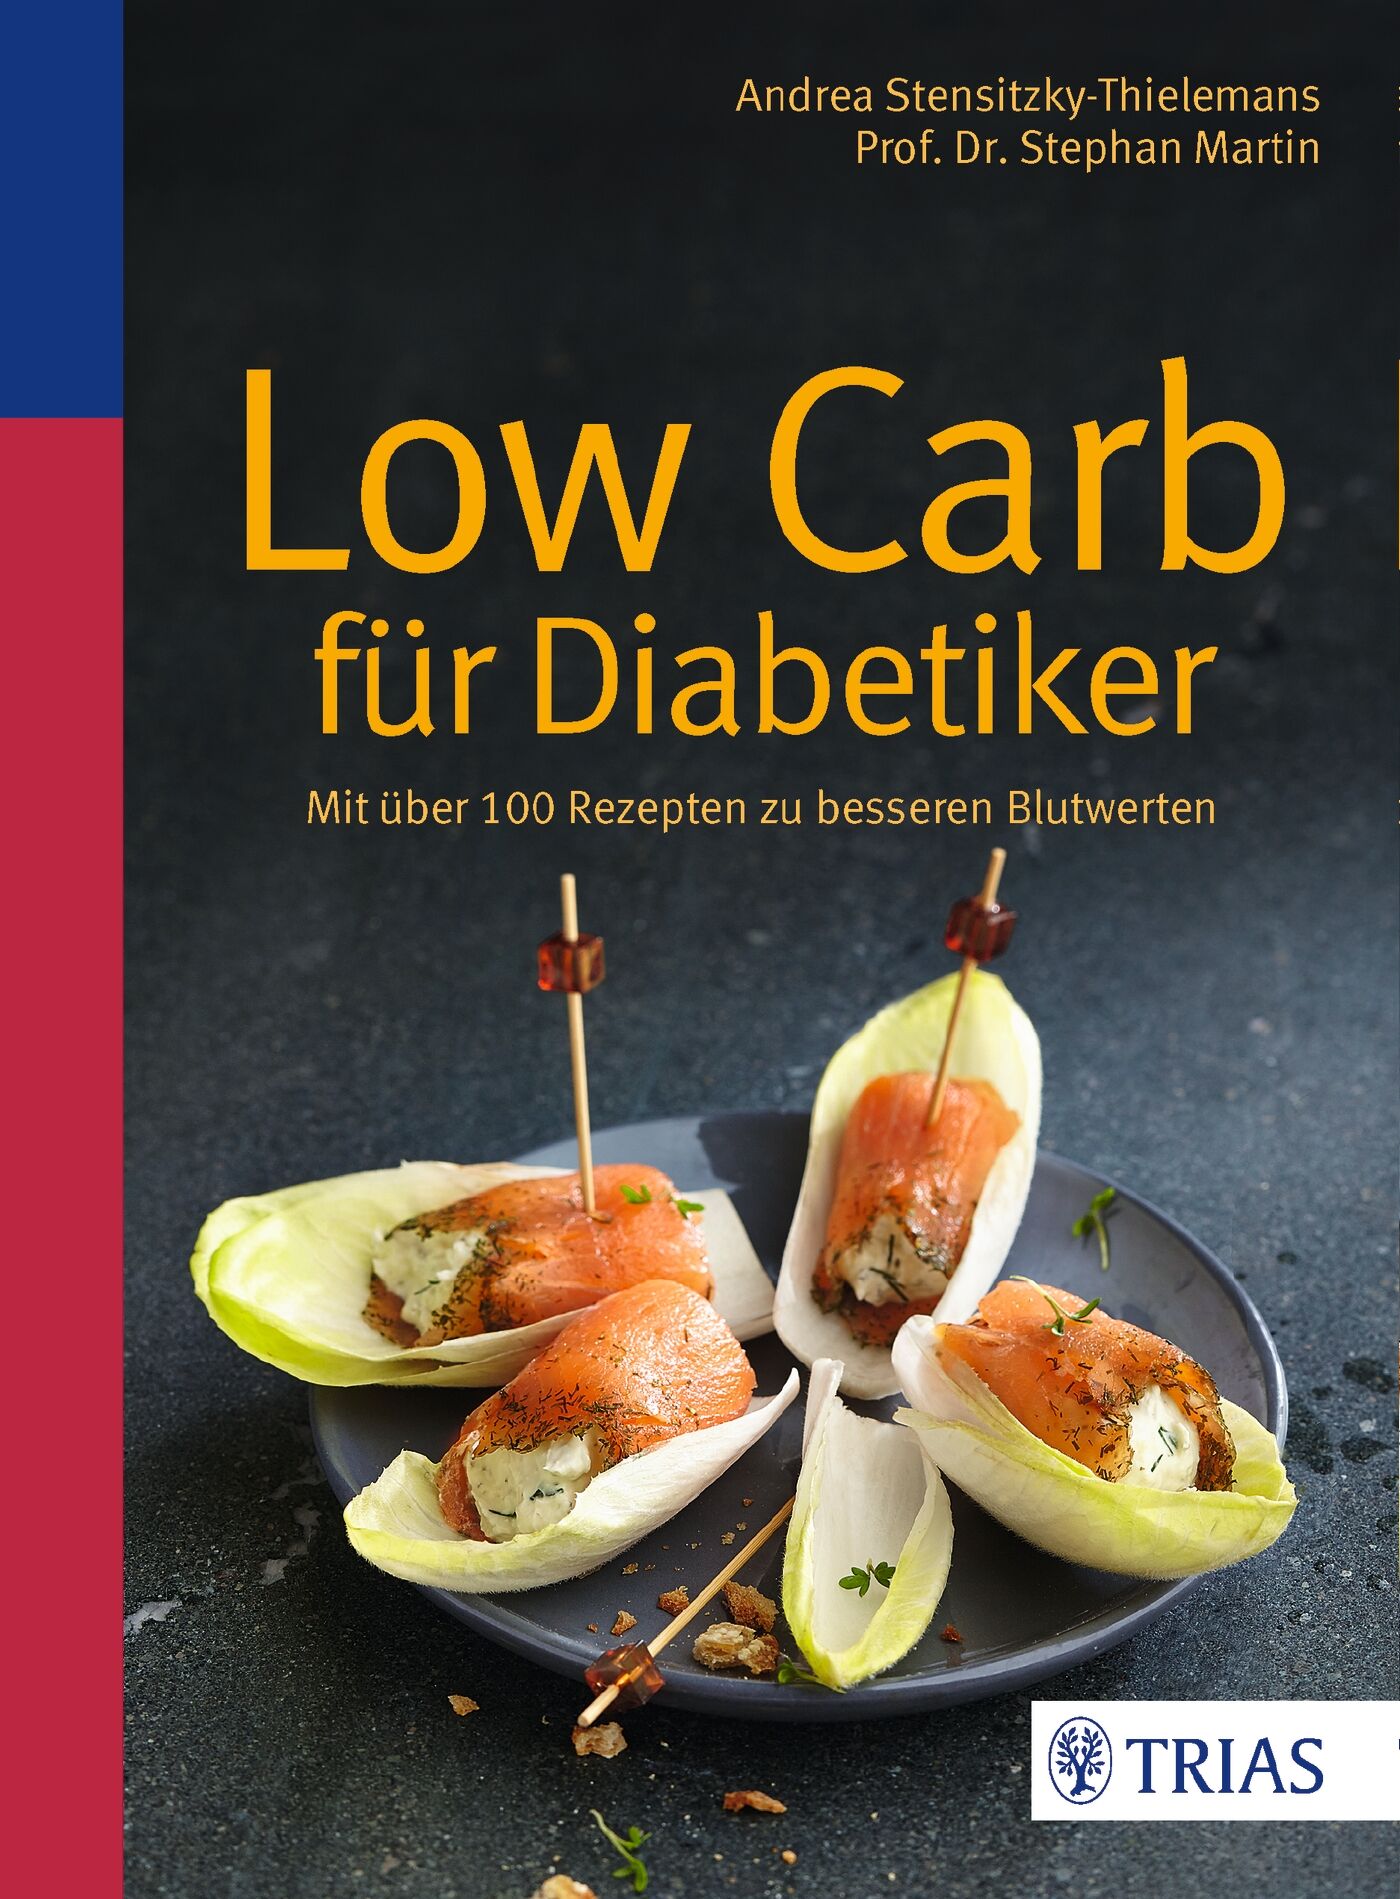 Low Carb für Diabetiker, 9783432102887